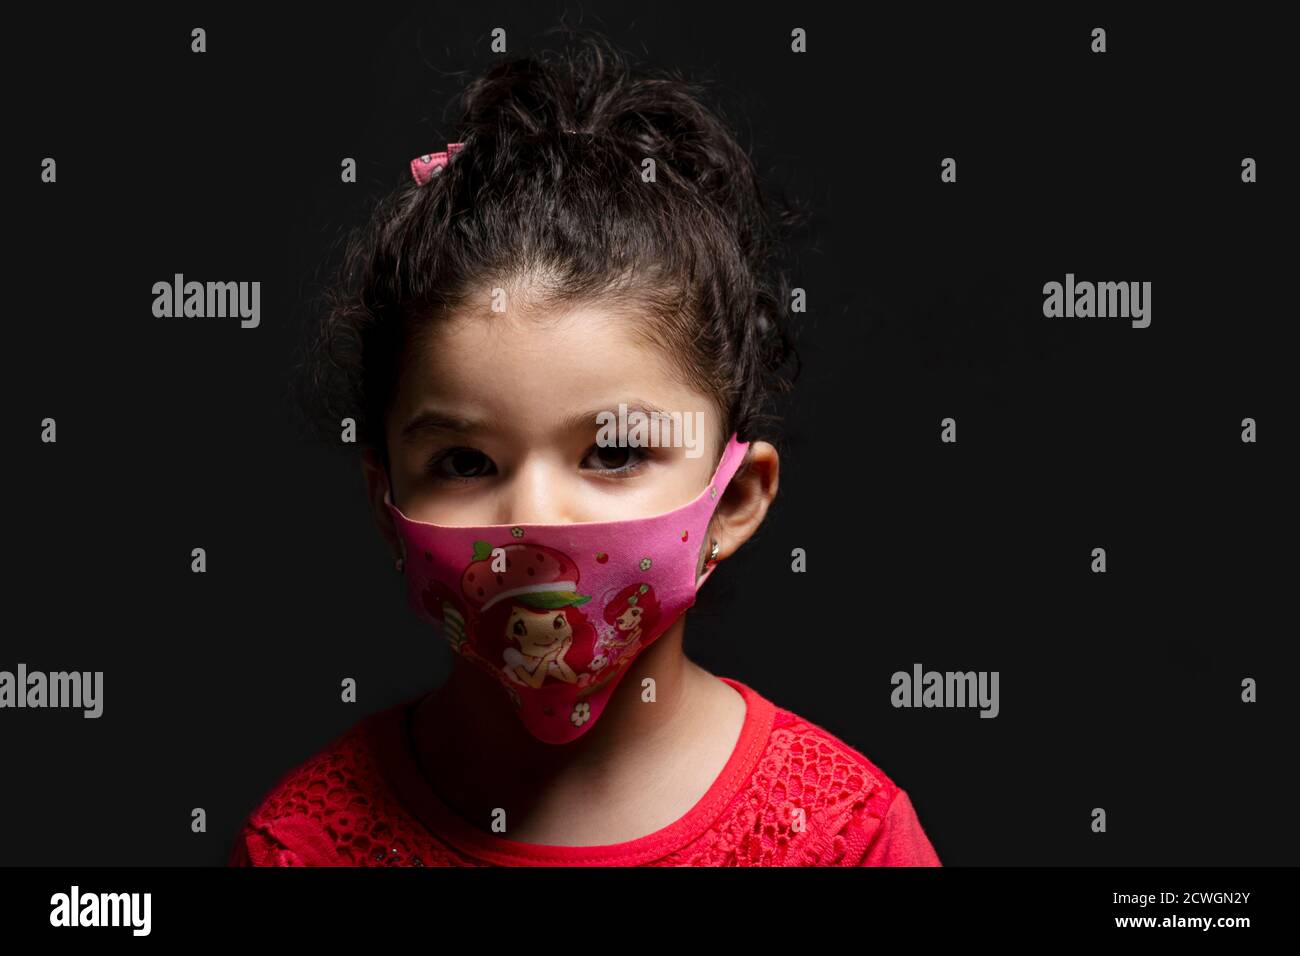 La bambina indossava una maschera per la protezione dal coronavirus epidemico di fronte a sfondo scuro, focolaio di coronavirus e concetto di inquinamento atmosferico Foto Stock